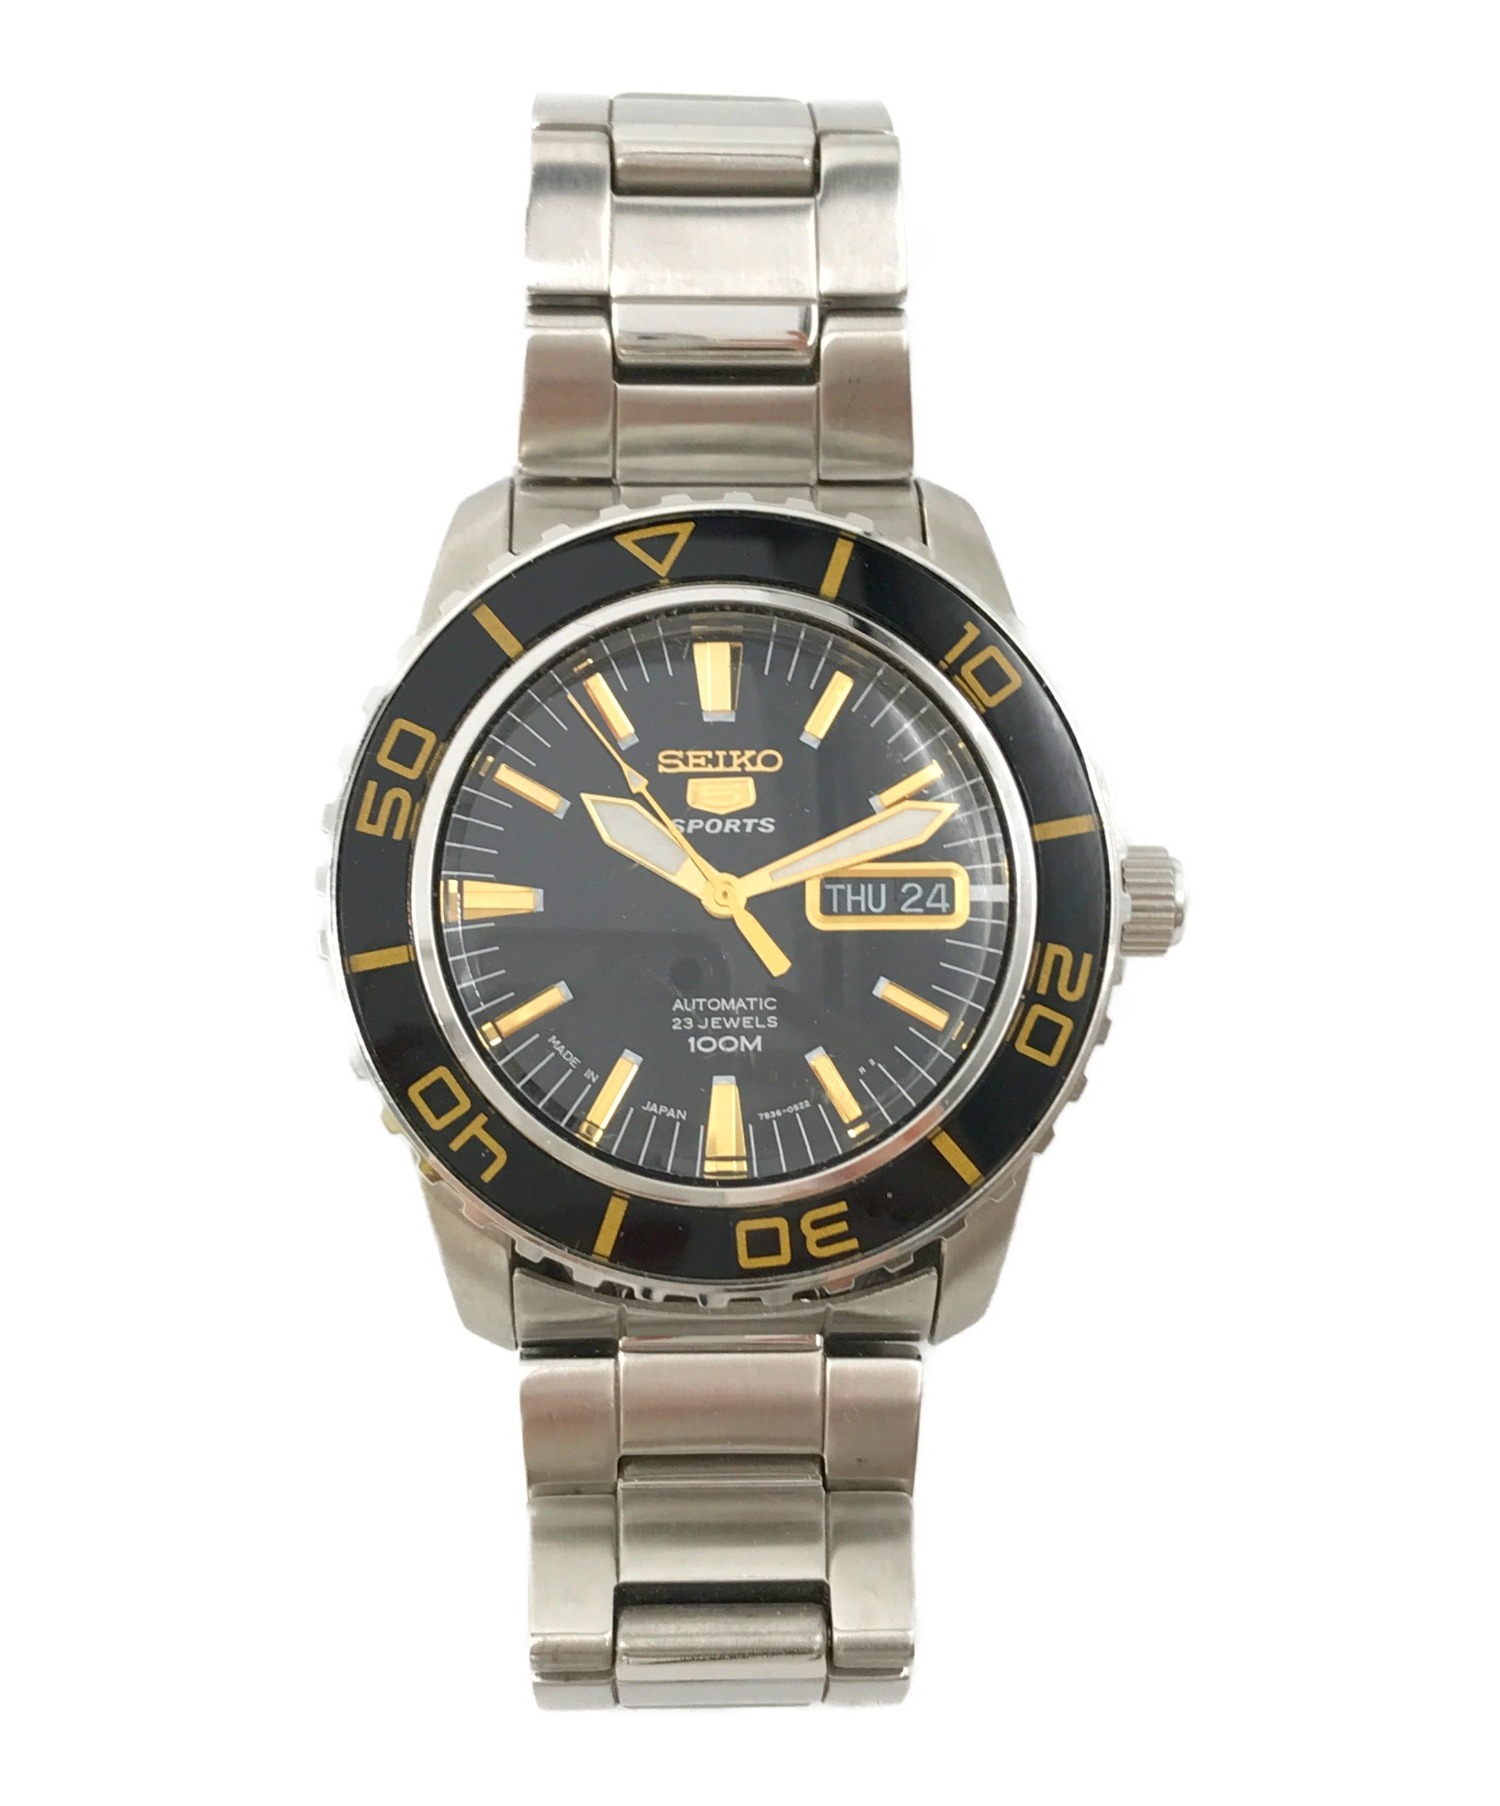 SEIKO (セイコー) 腕時計 シルバー×ブラック サイズ:- SNZH55 7S36-04N0 自動巻き